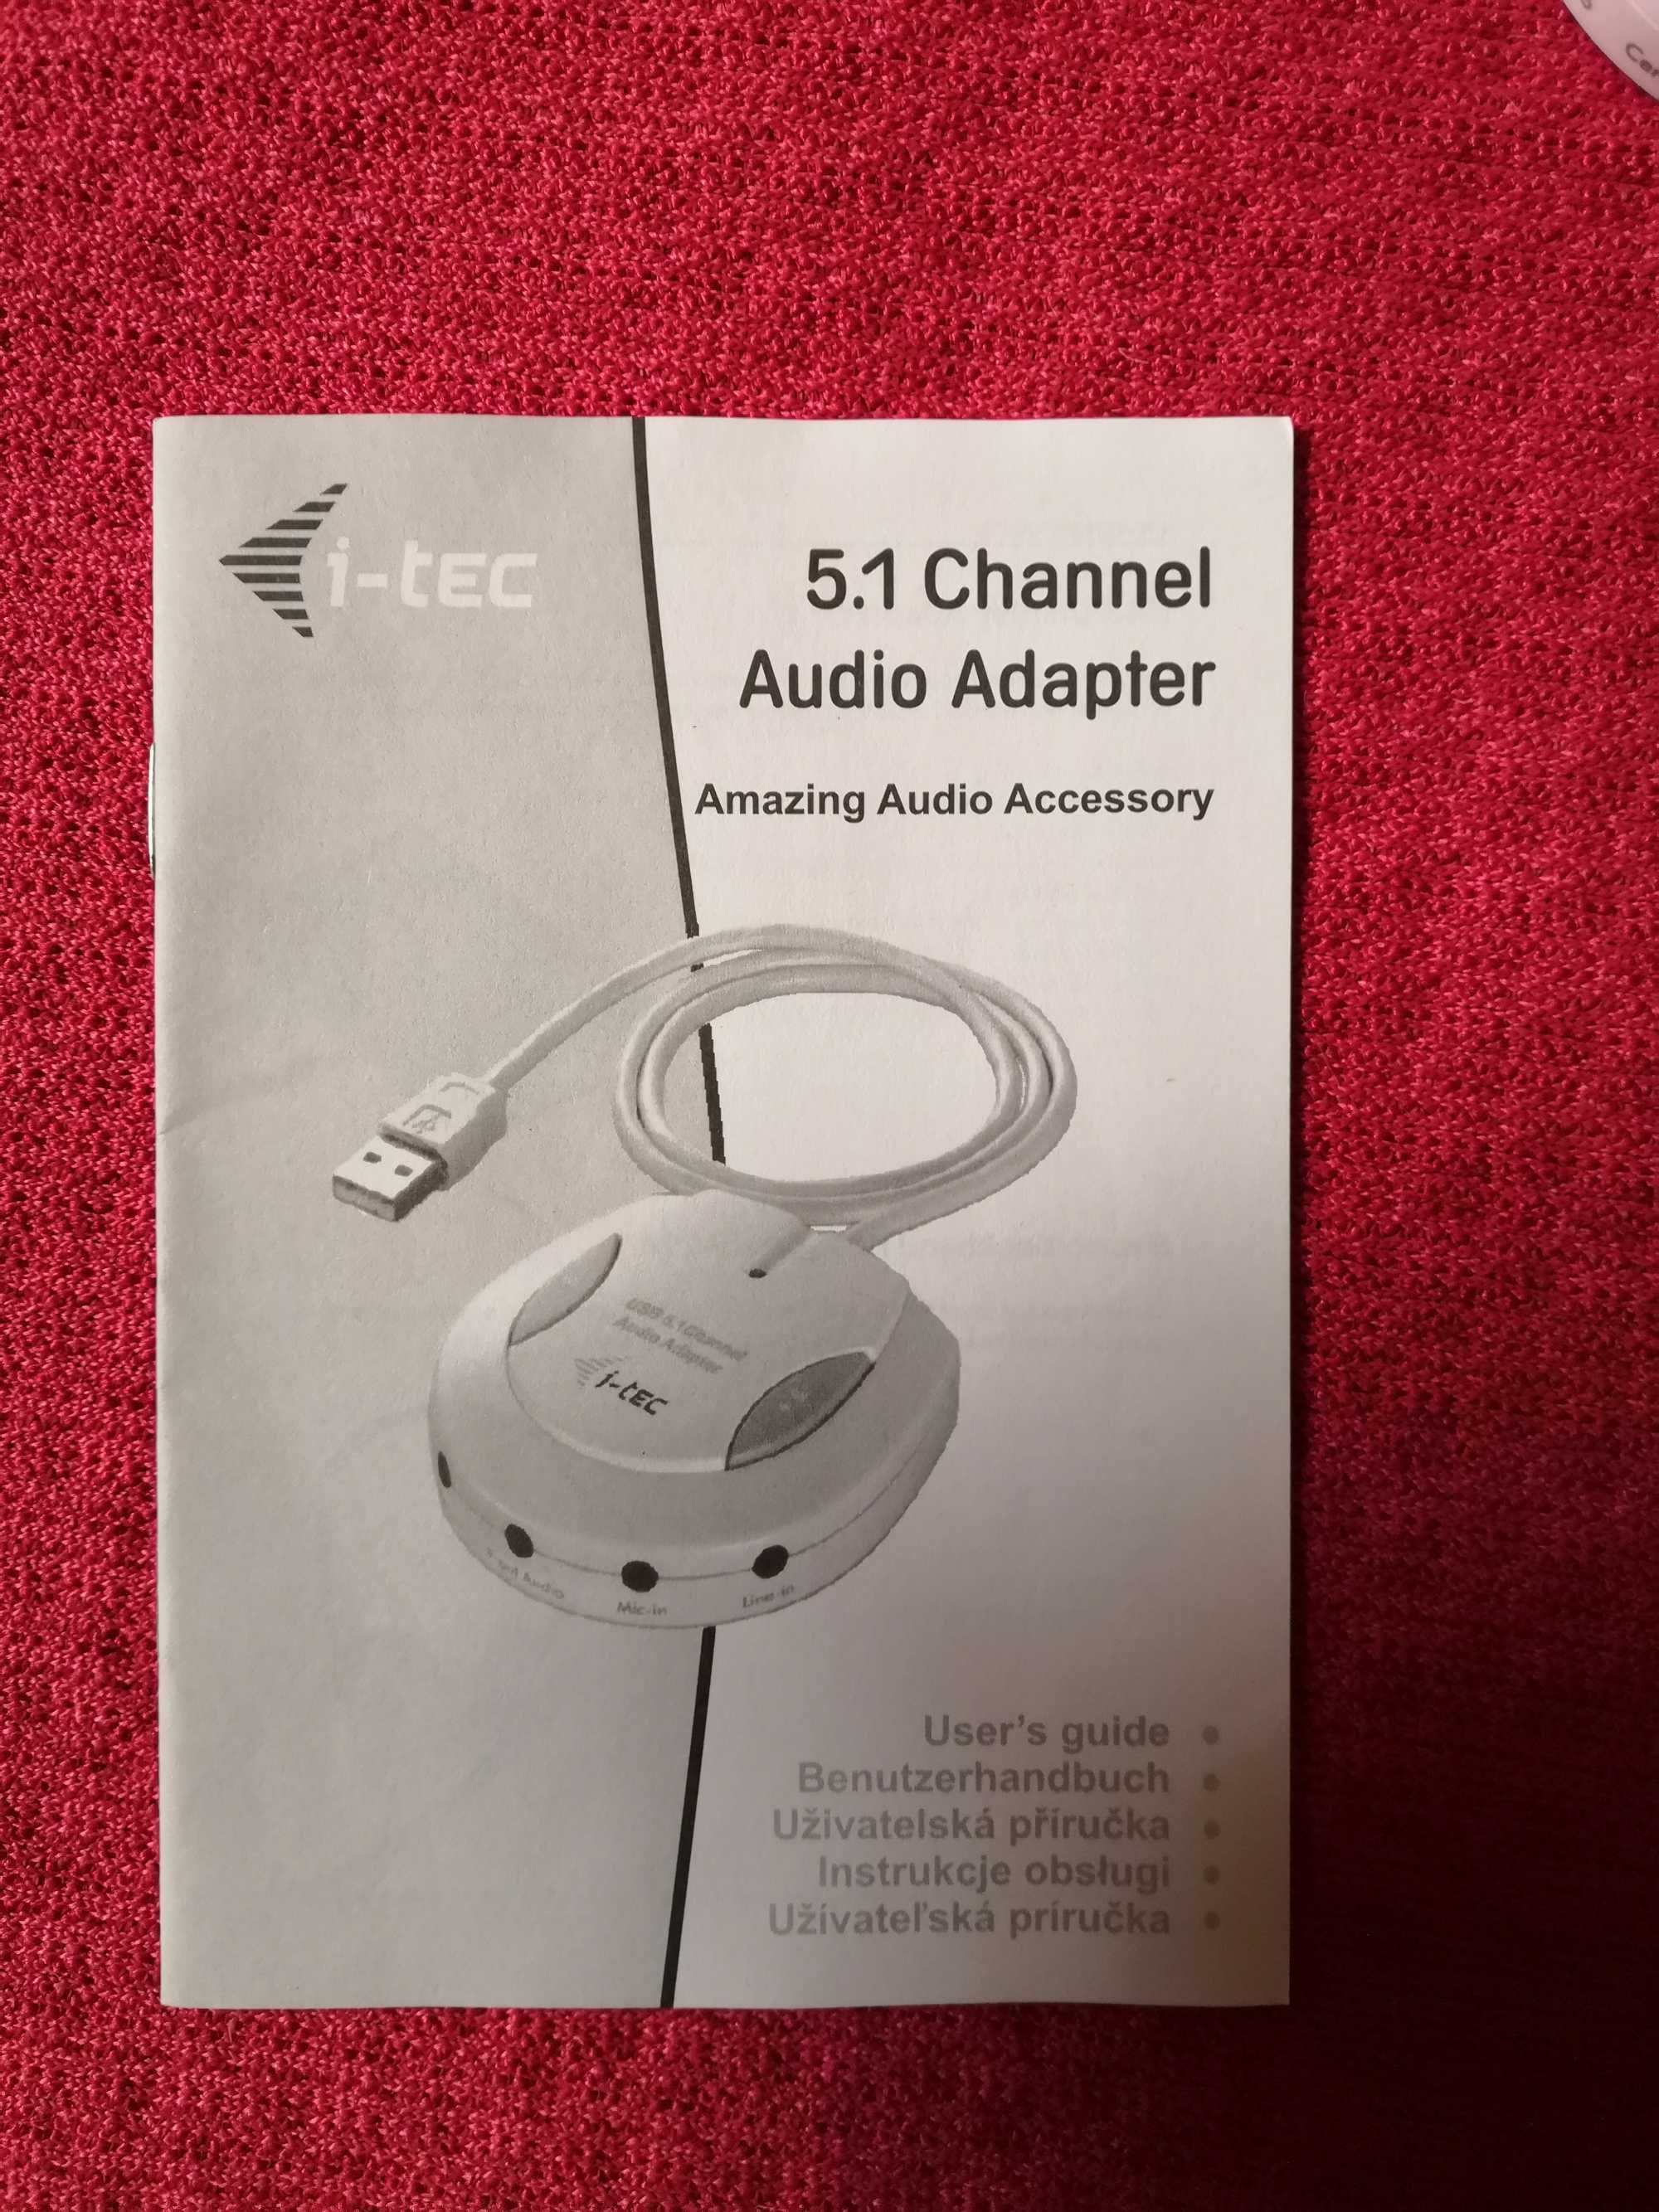 Karta dźwiękowa zewnętrzna USB 5.1 Channel Audio Adapter i-tec